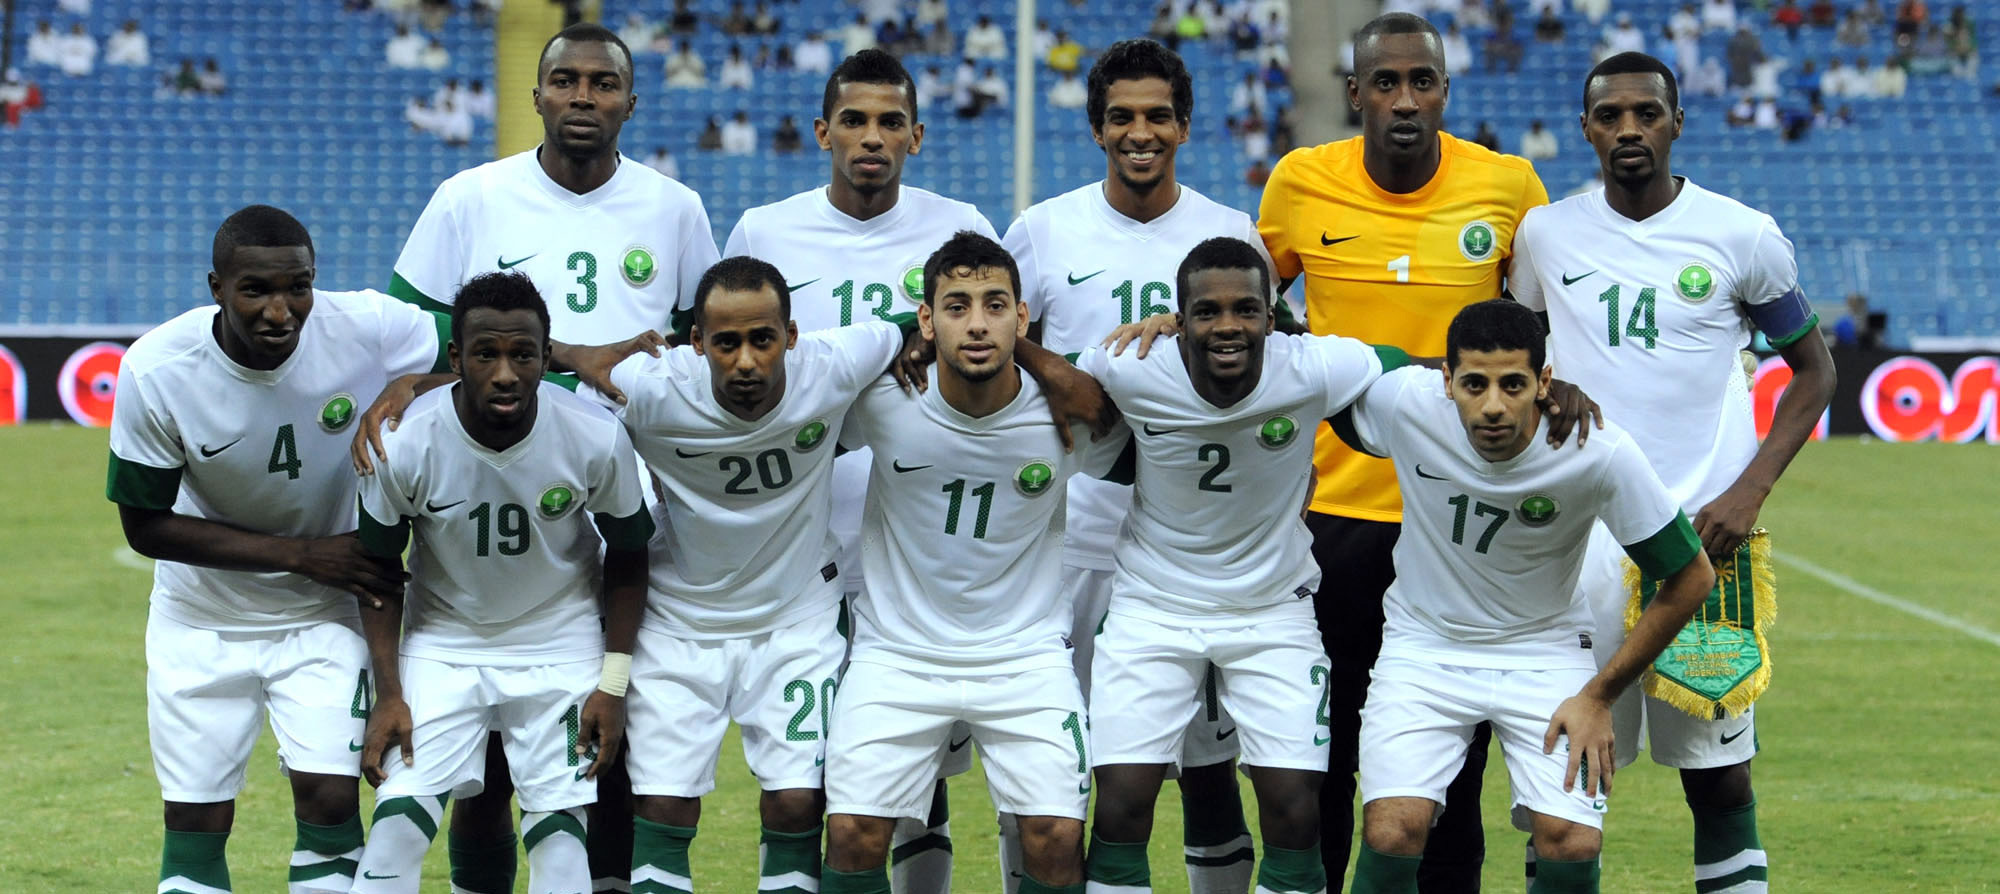 متى كان آخر فوز حققته الإمارات على السّعودية؟!